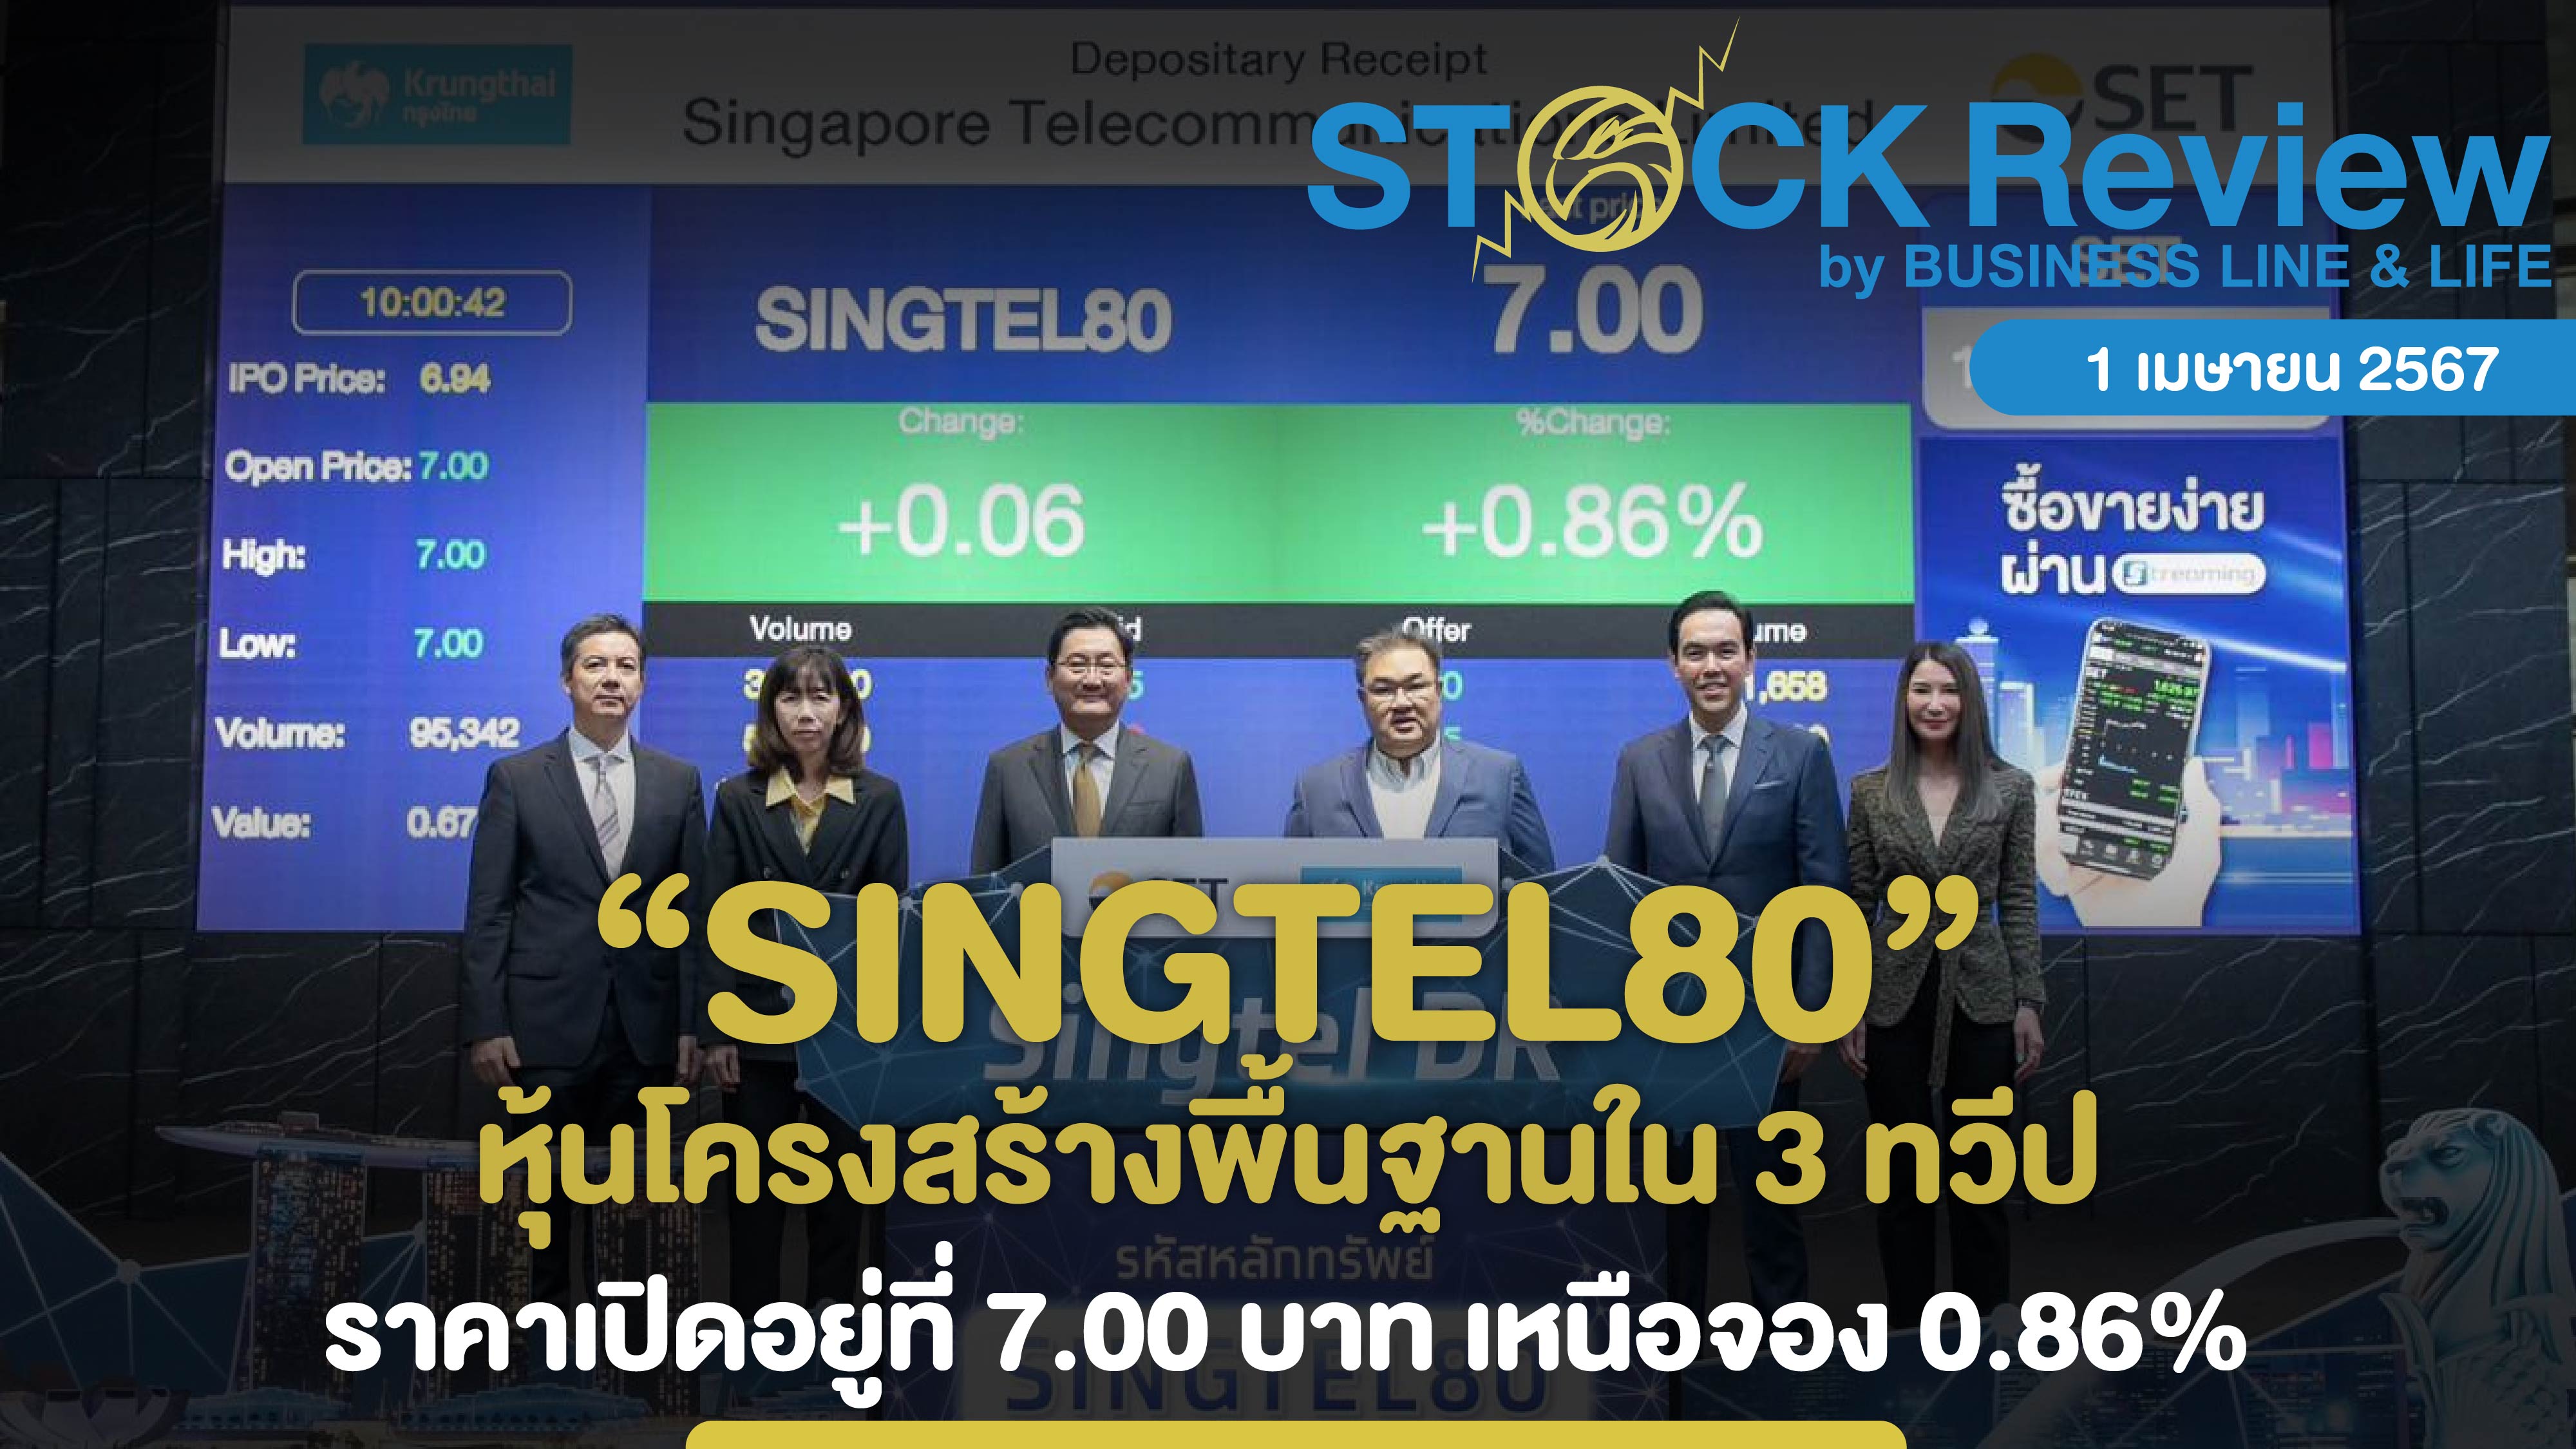 ซื้อขายวันแรกหลักทรัพย์ DR “SINGTEL80” ราคาเปิดอยู่ที่ 7.00 บาท เหนือจอง 0.86%